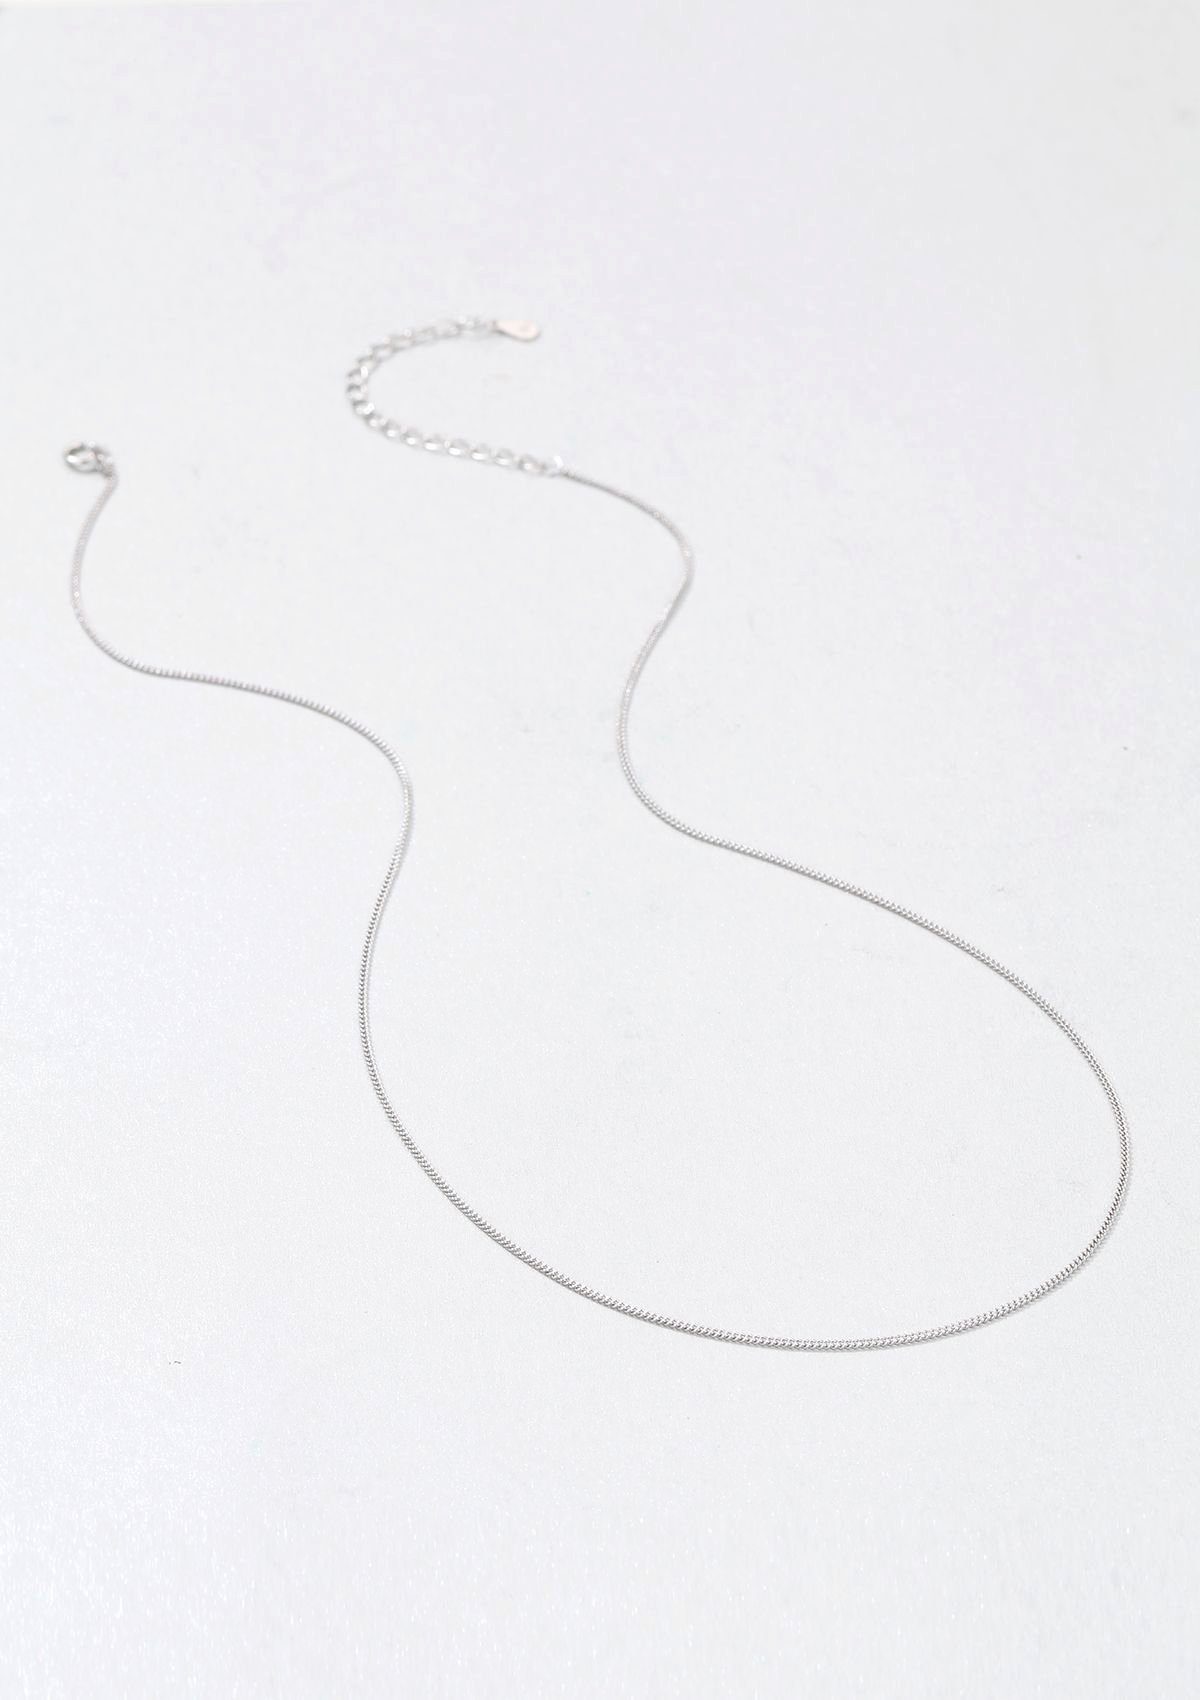 Silber Vergoldet Halskette Happiness hypoallergen Damen Kombinieren, Layer strukturiert zum fein Look 18K, Hey 925 Silberkette